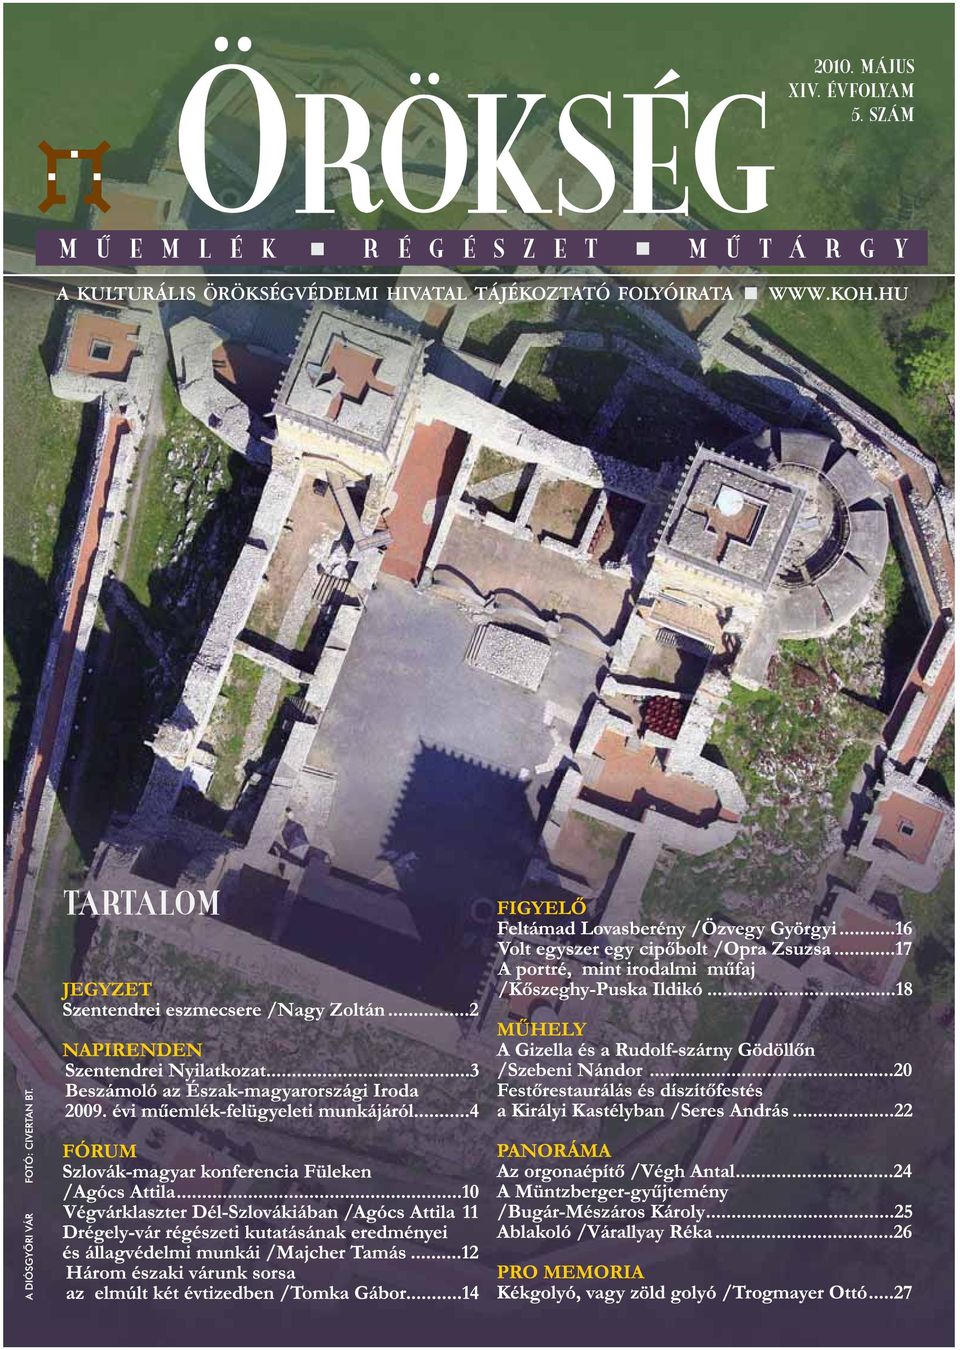 Műemlékvédelem és turizmus, tágabb értelemben természetesen: örökségvédelem  - PDF Ingyenes letöltés